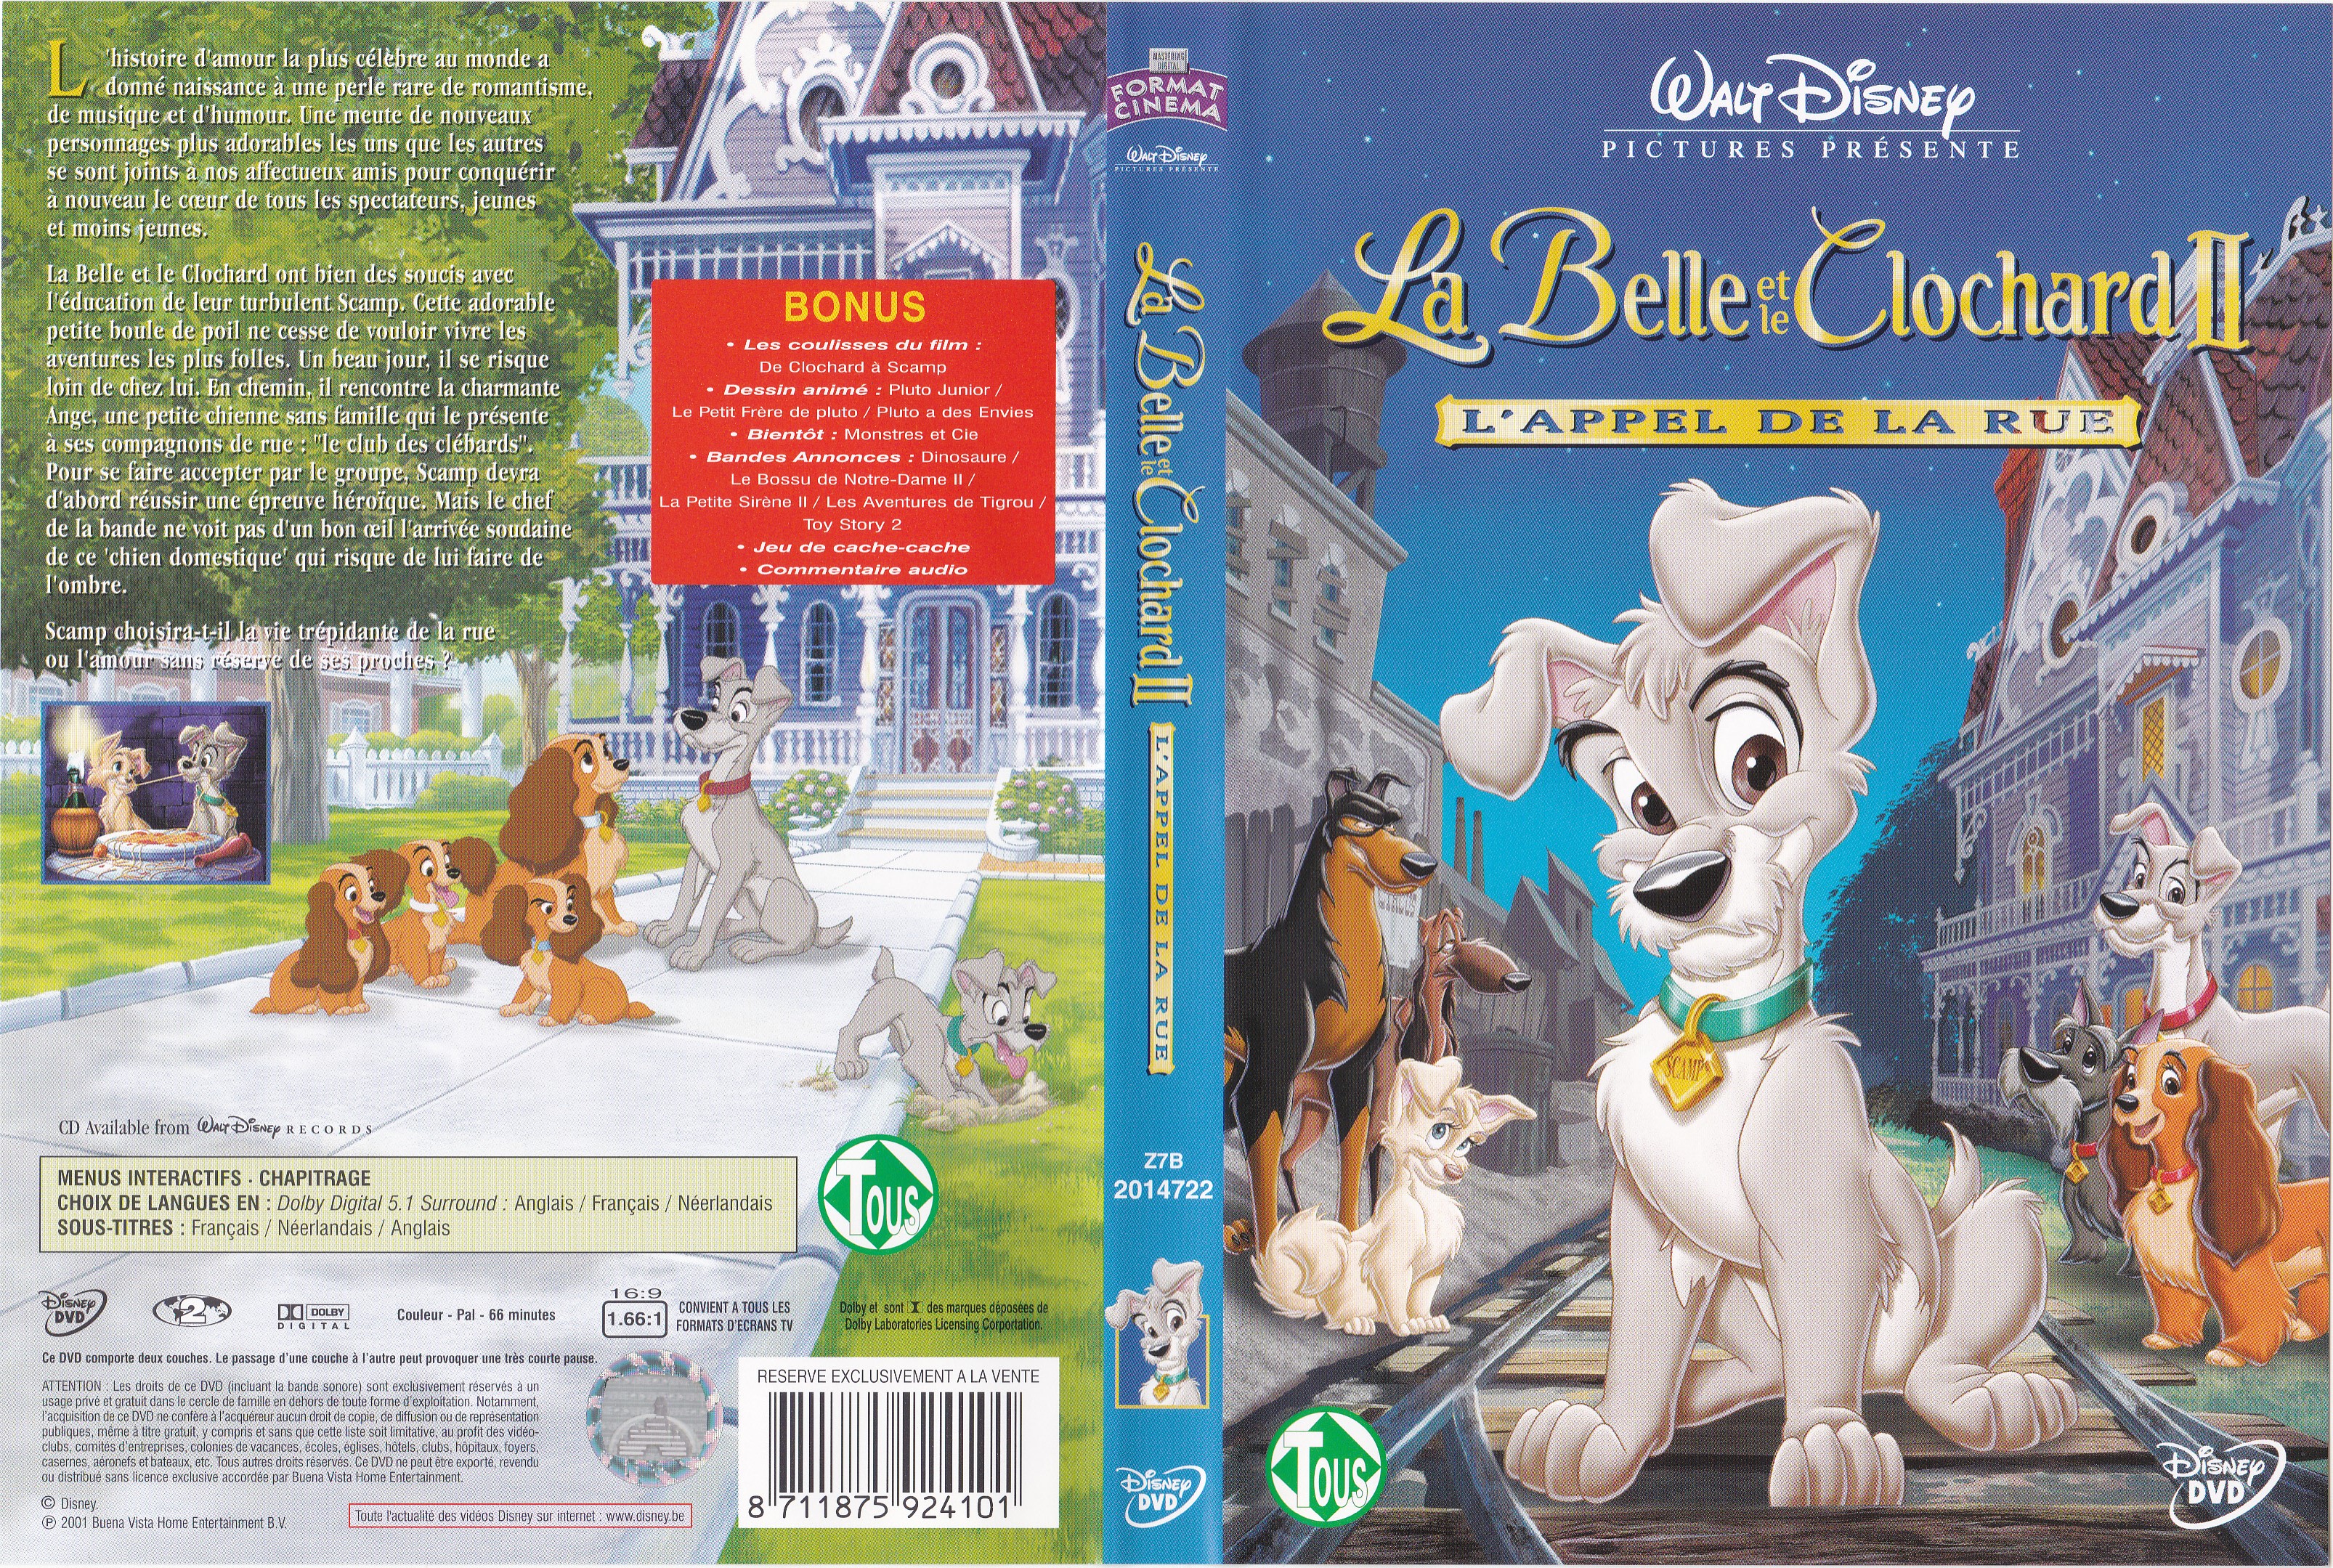 Jaquette DVD La Belle et le Clochard 2 v3